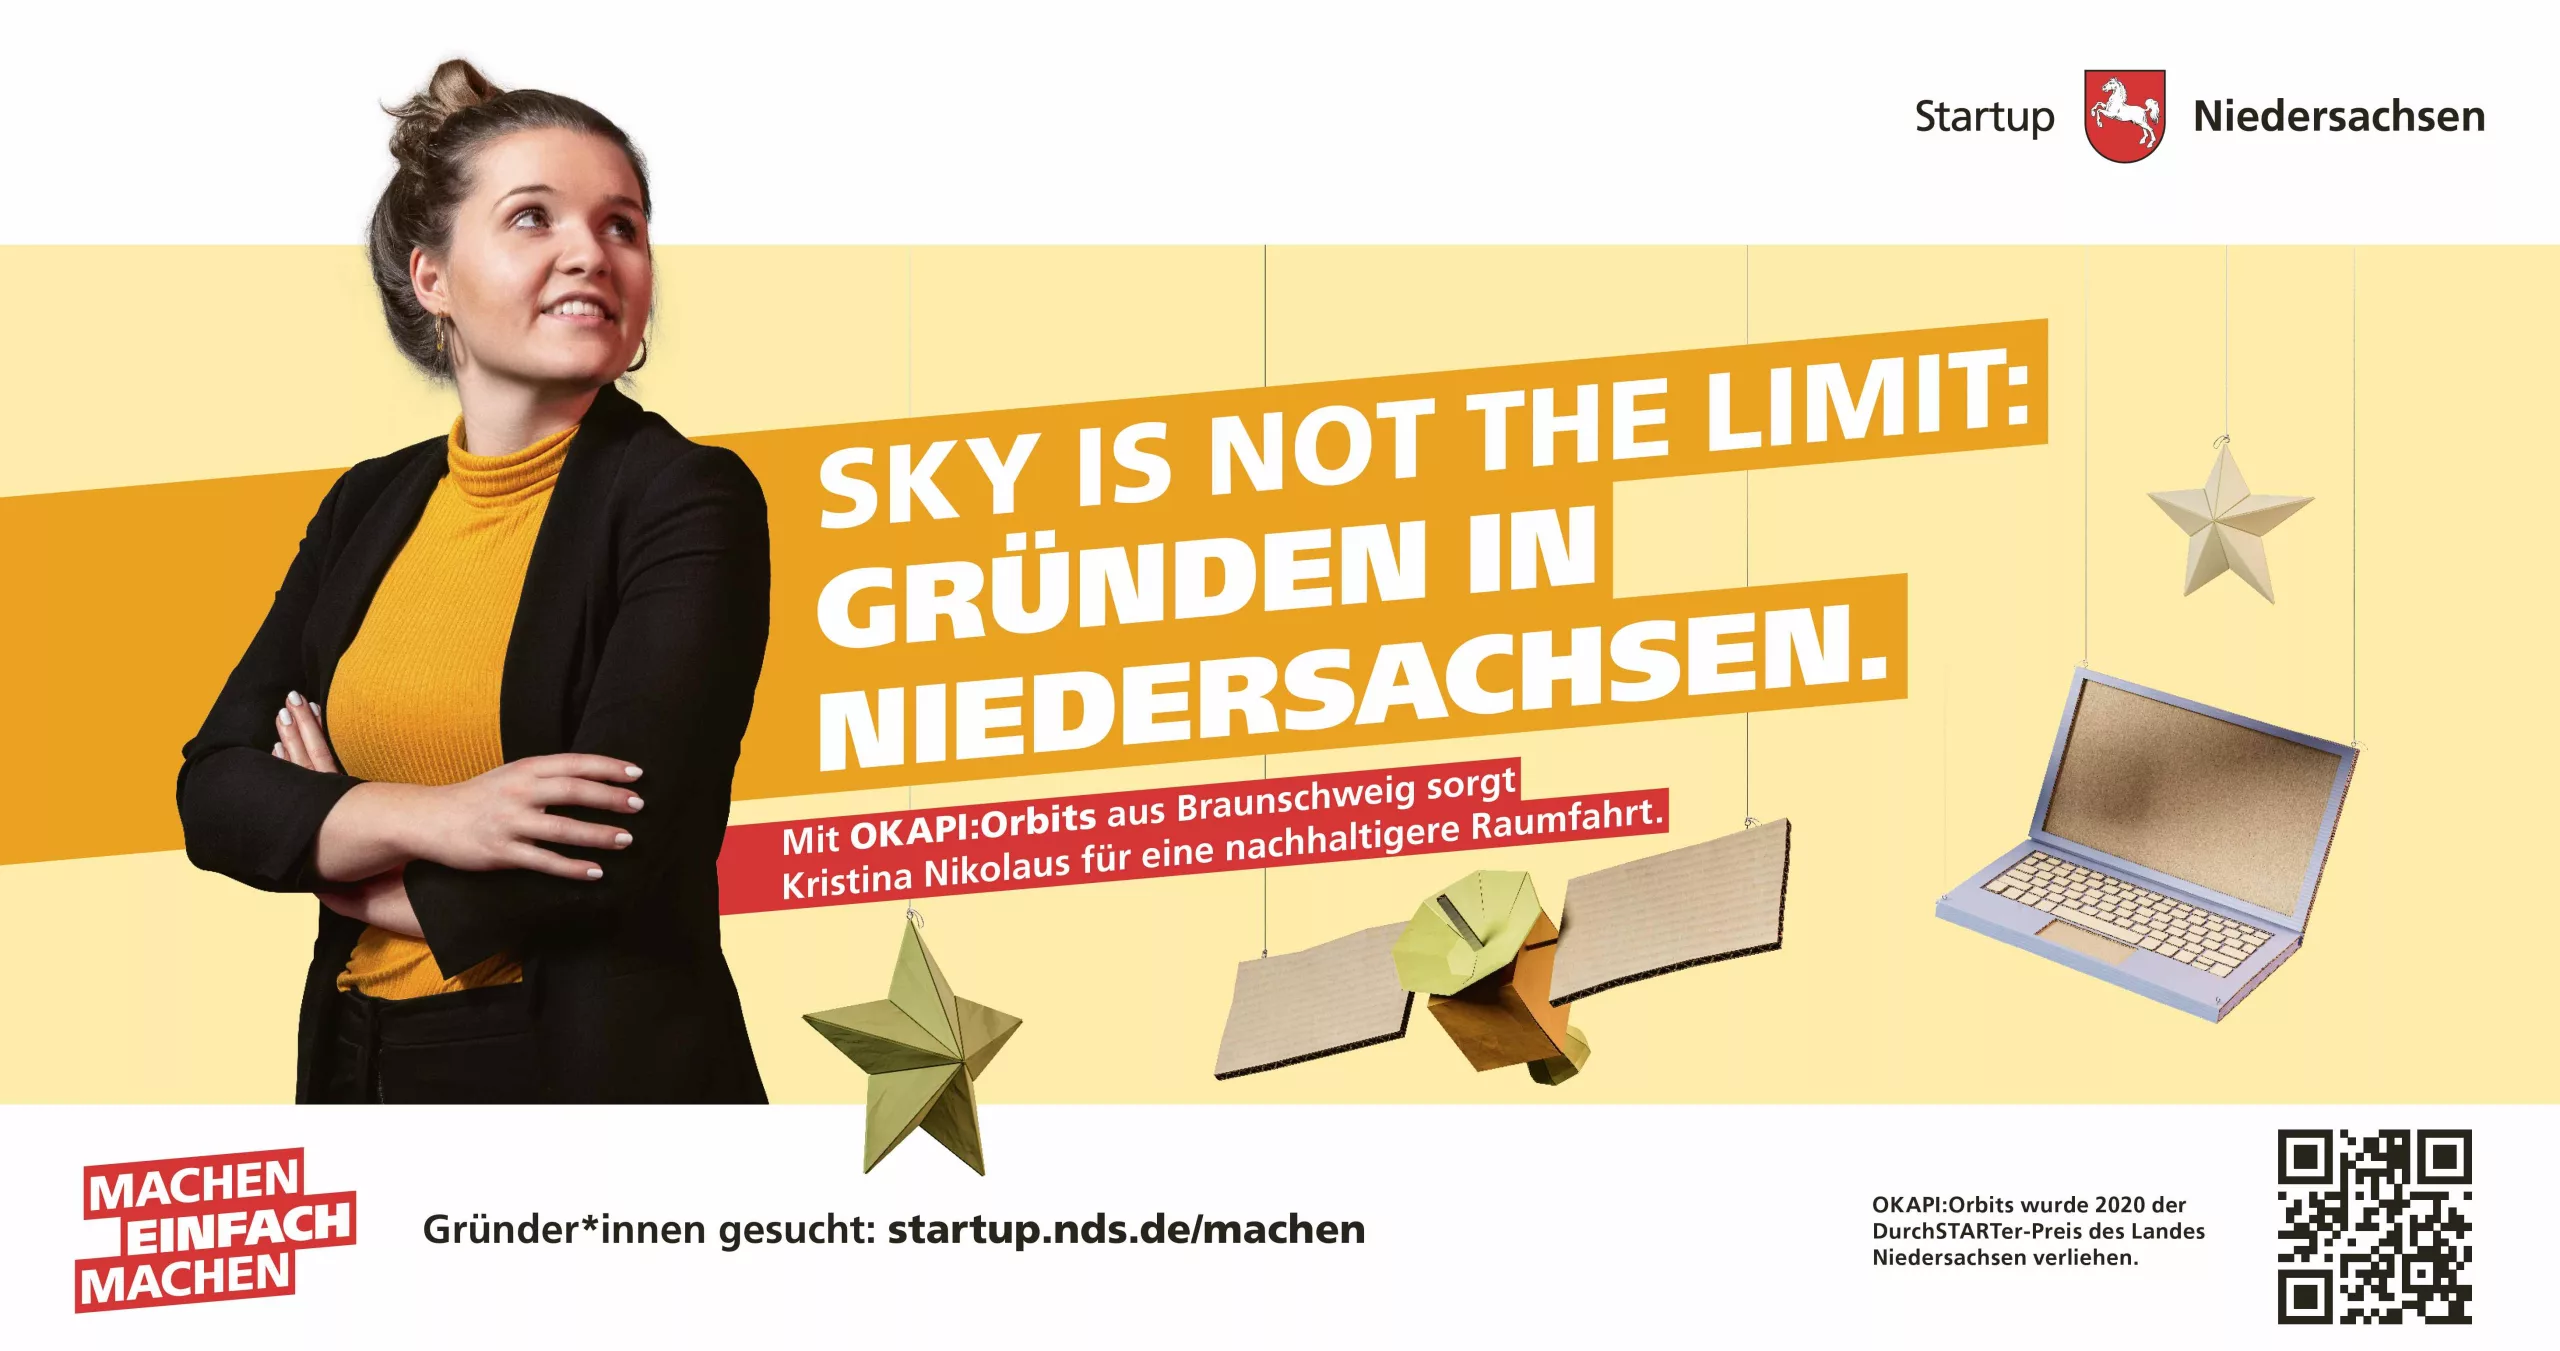 Anzeigenbild der Gründerin Kristina Nikolaus mit ihrem Startup OKAPI:Orbits. Die Headline der Anzeige lautet 